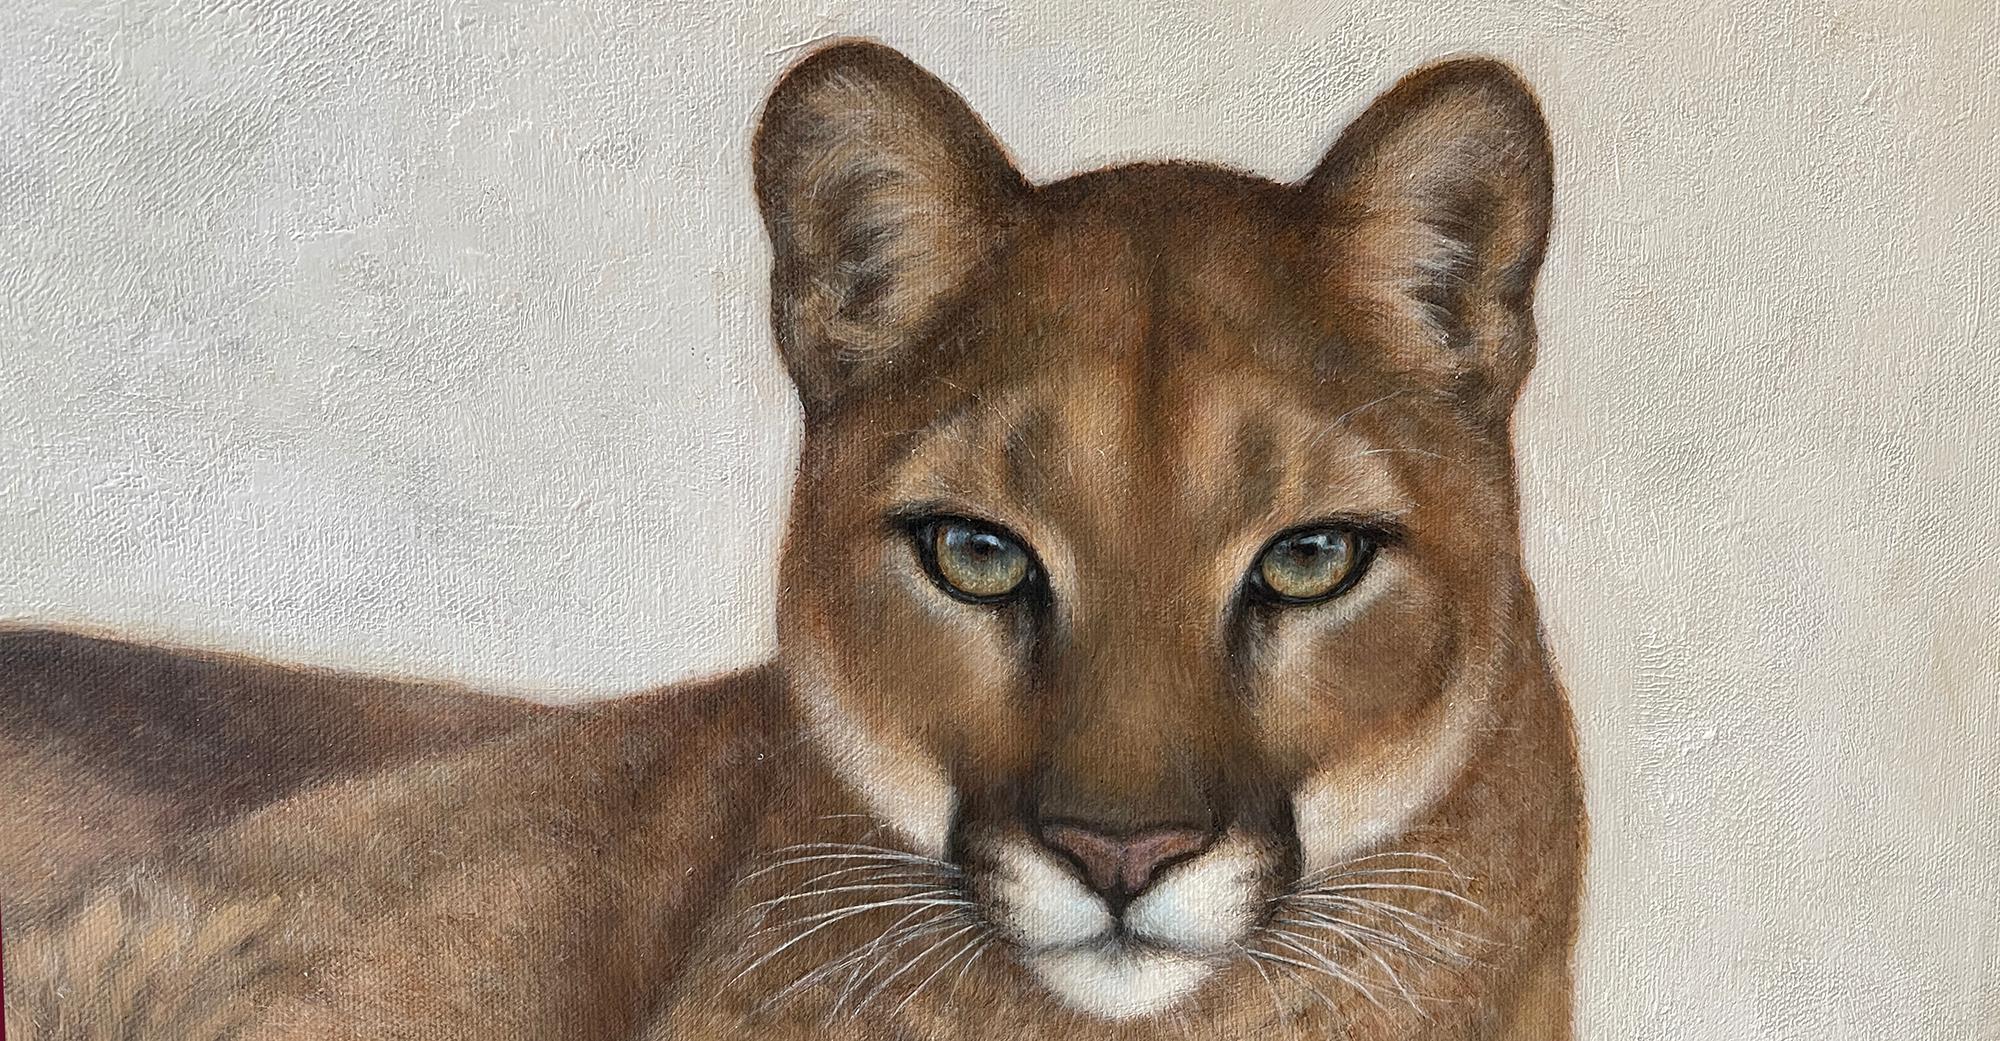 cougar face paint